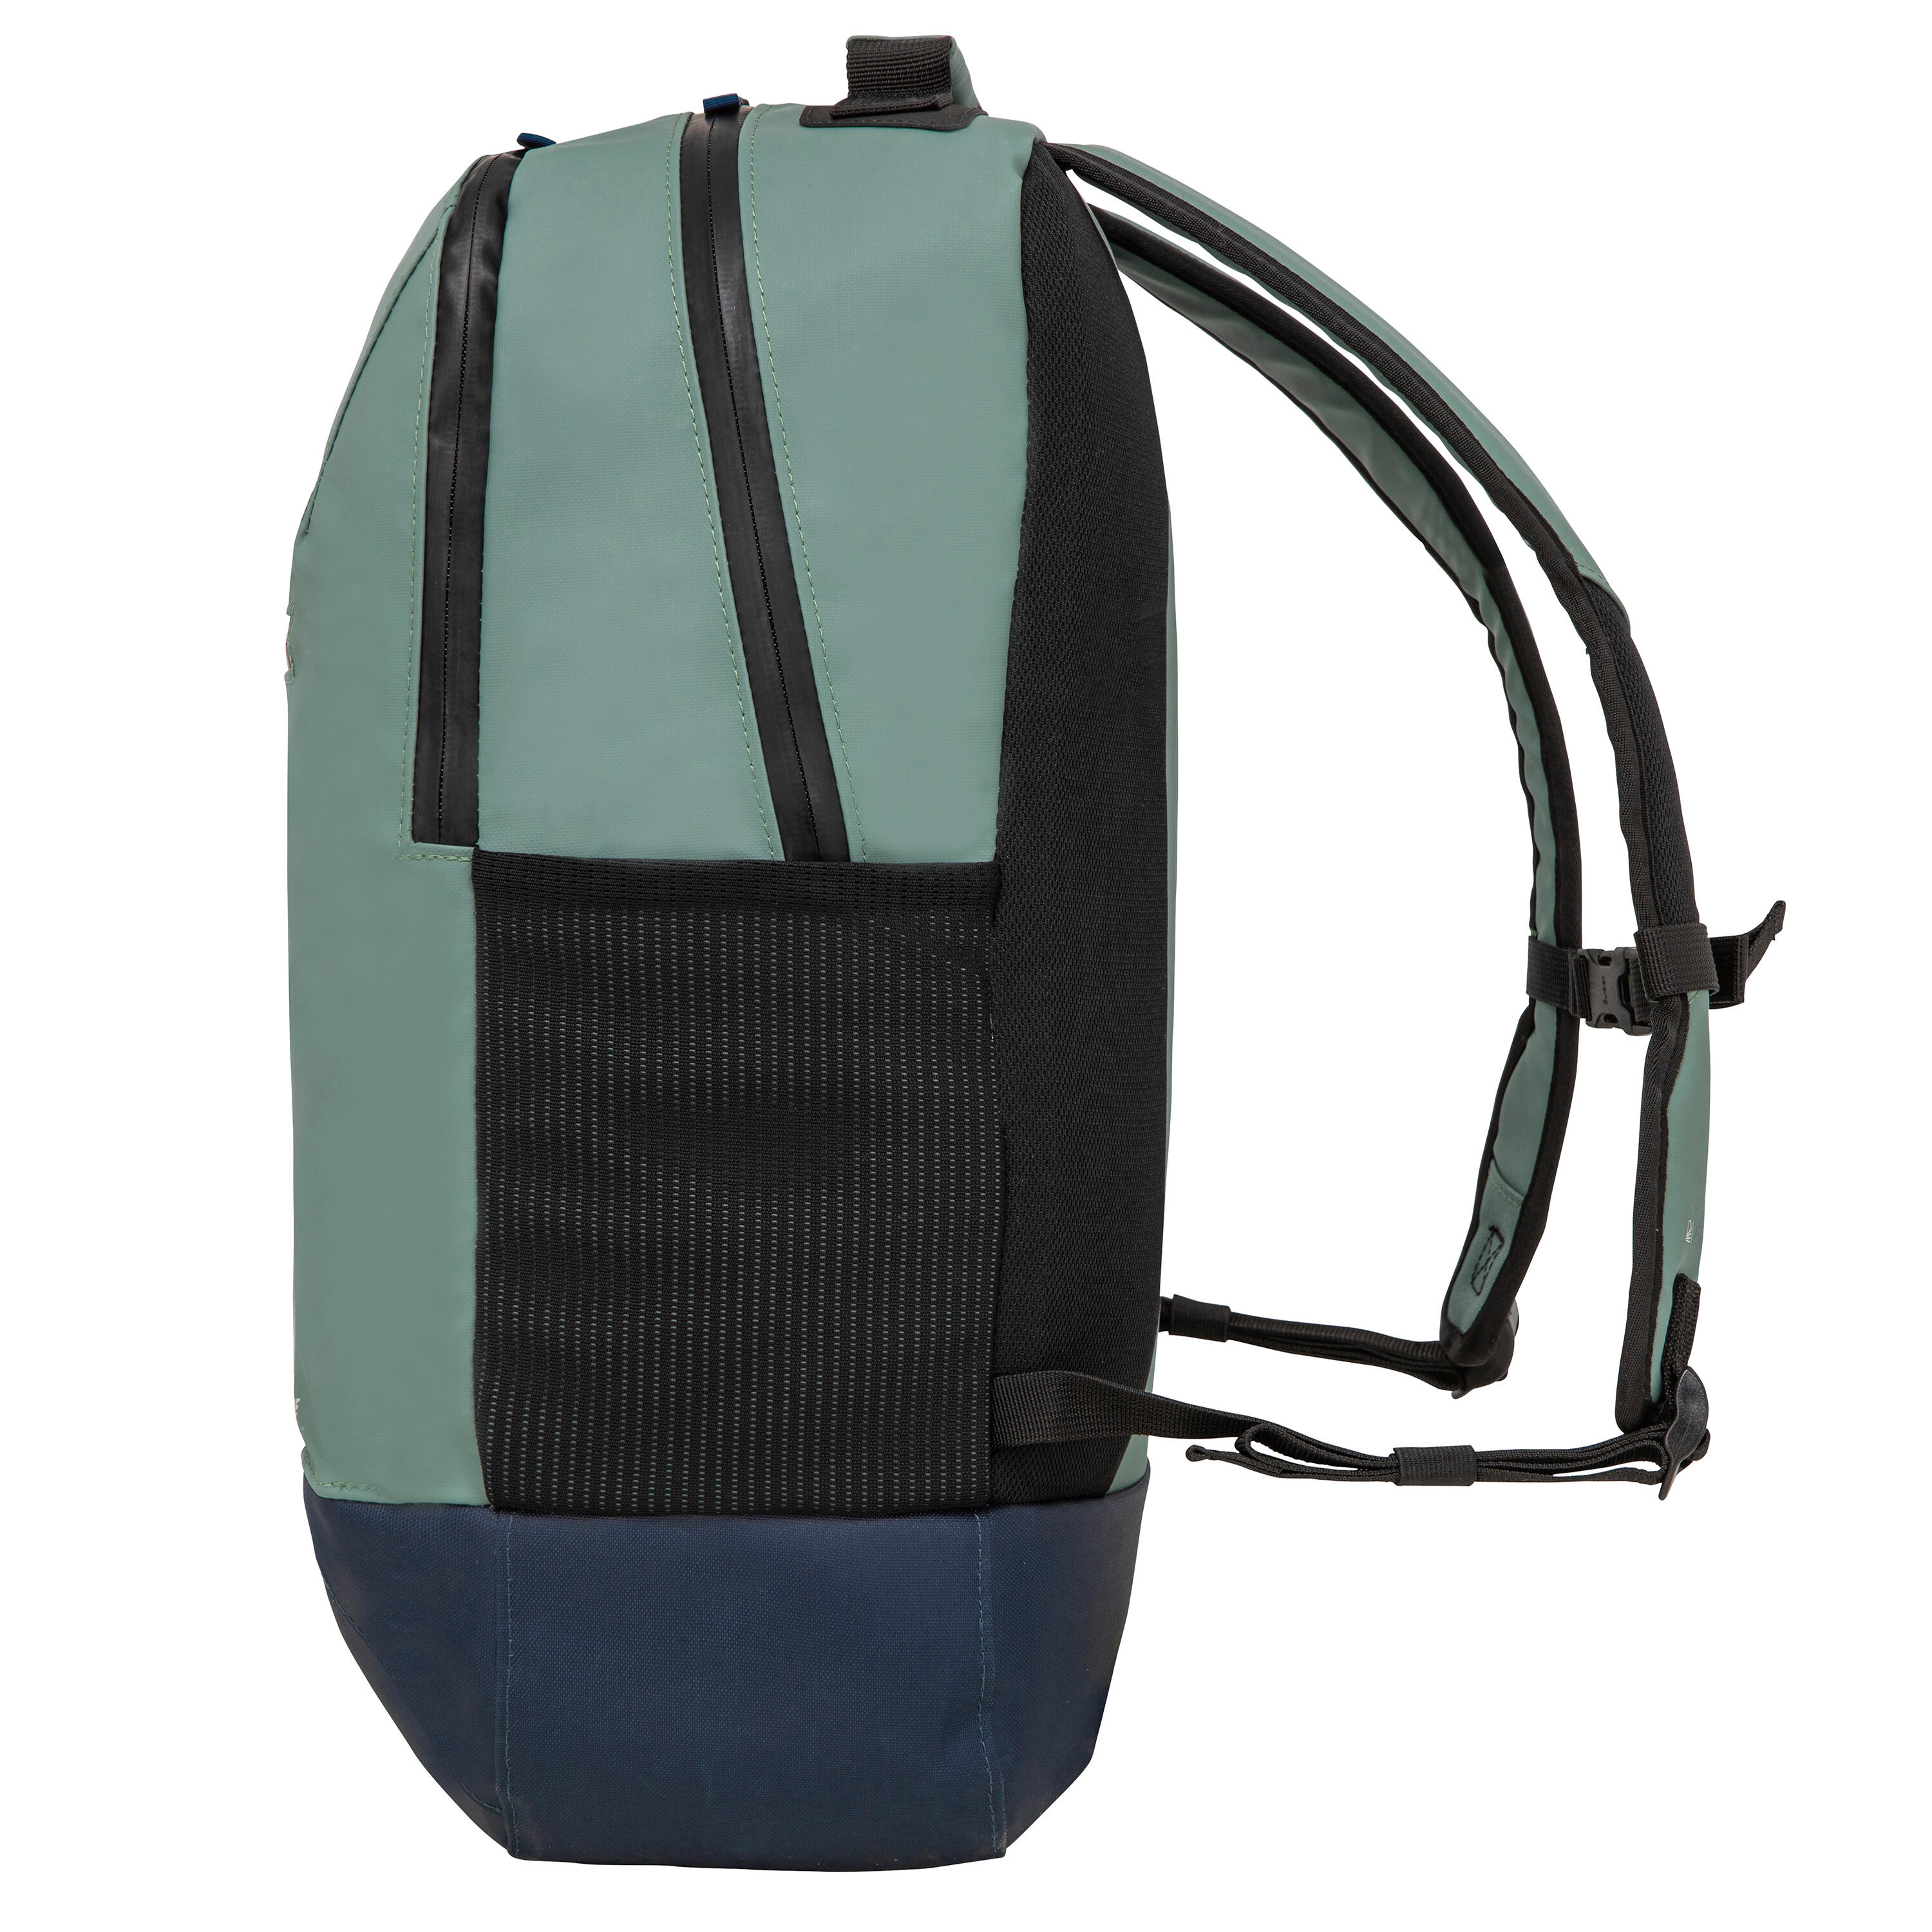 Waterproof backpack 25 litres - Kaki 5/11